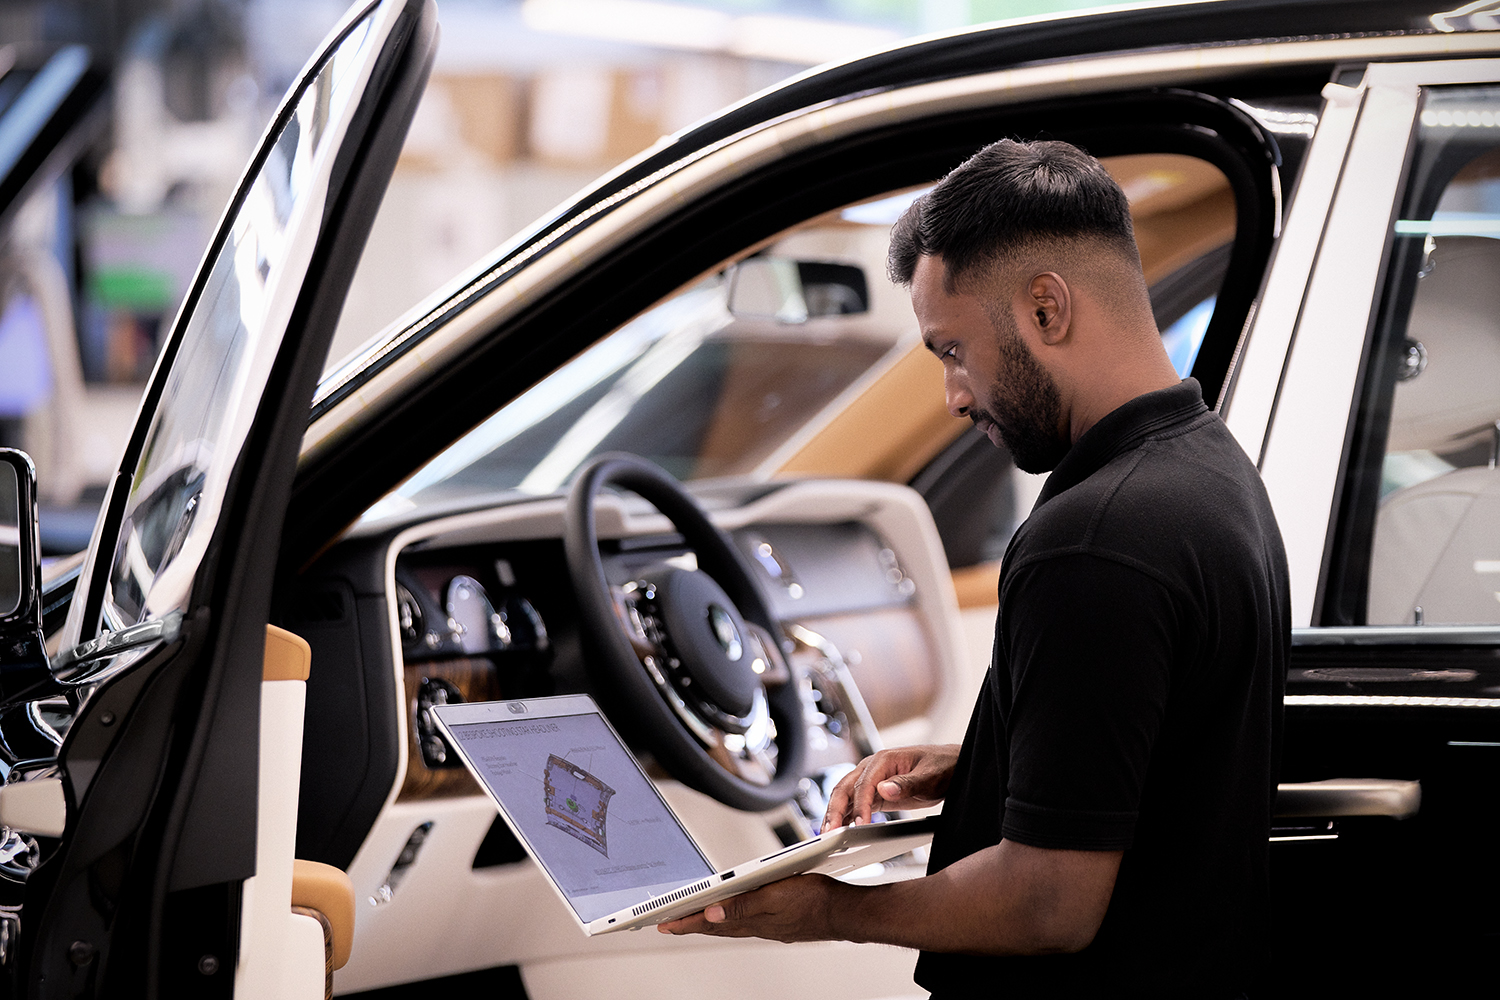 Rolls Royce Manufacturing employee analysing car data.